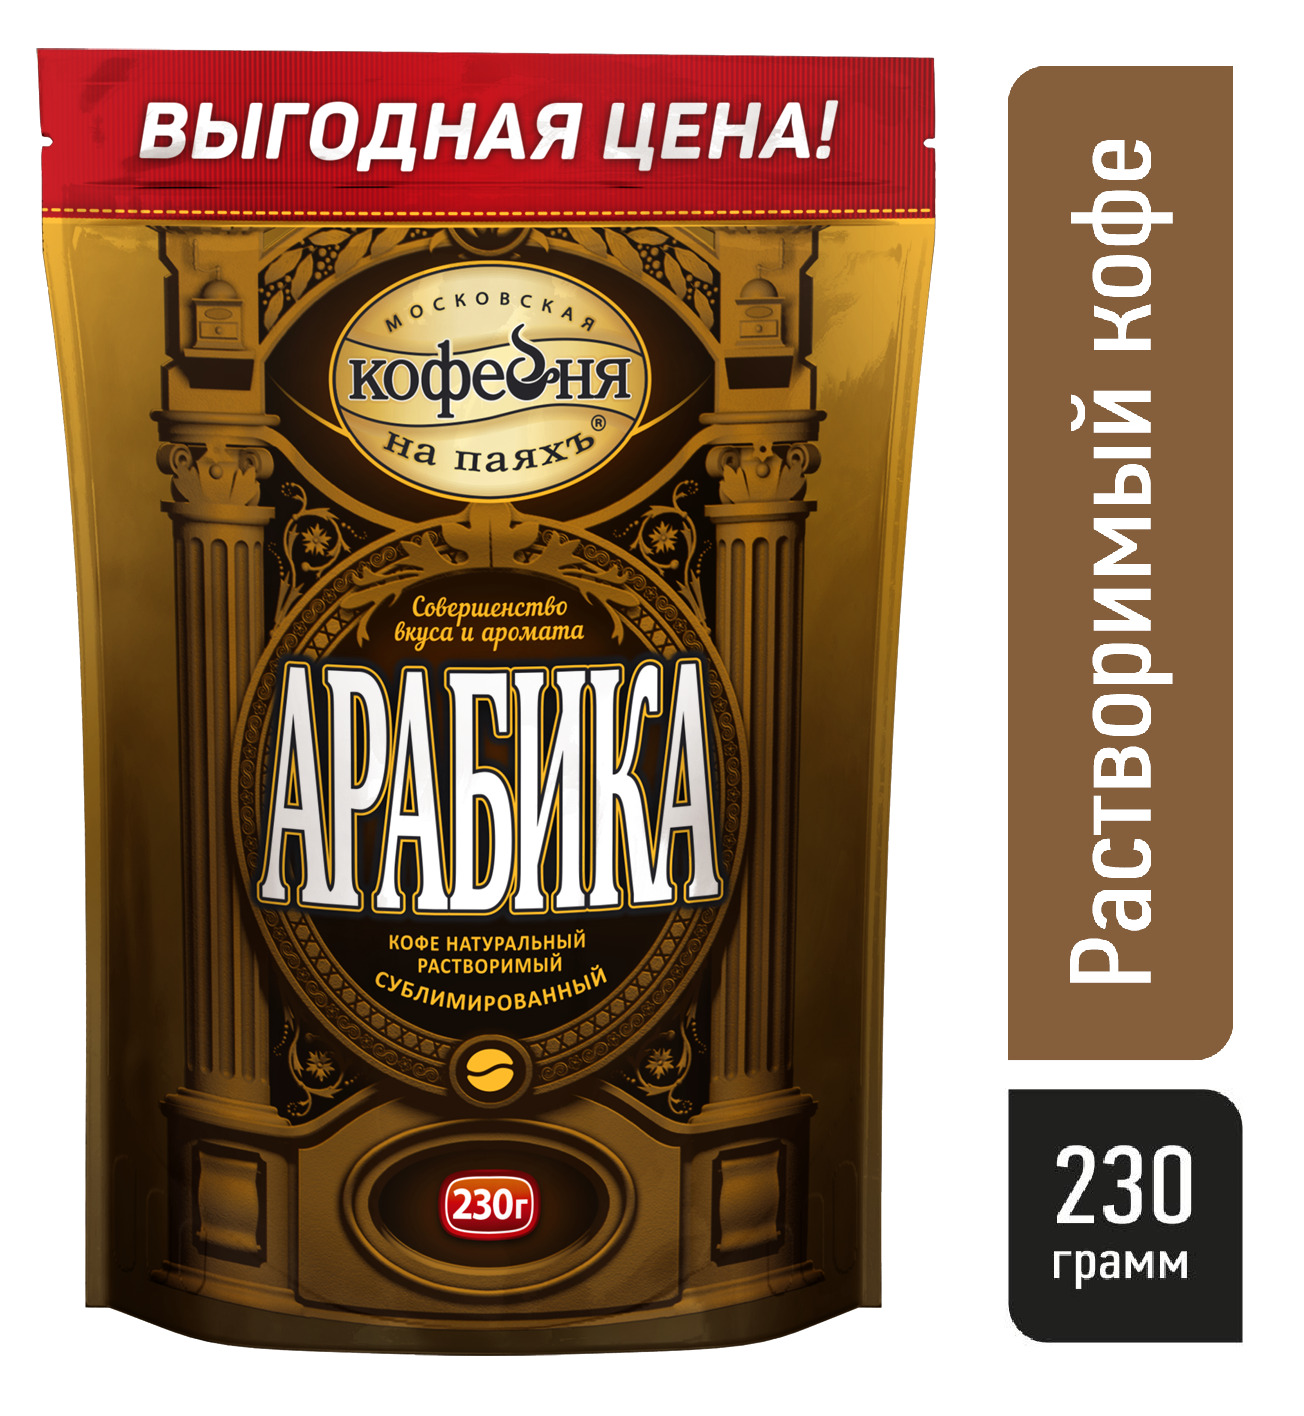 Коферастворимый,МосковскаяКофейнянапаяхъАрабика100%натуральныйсублимированный,230гр.